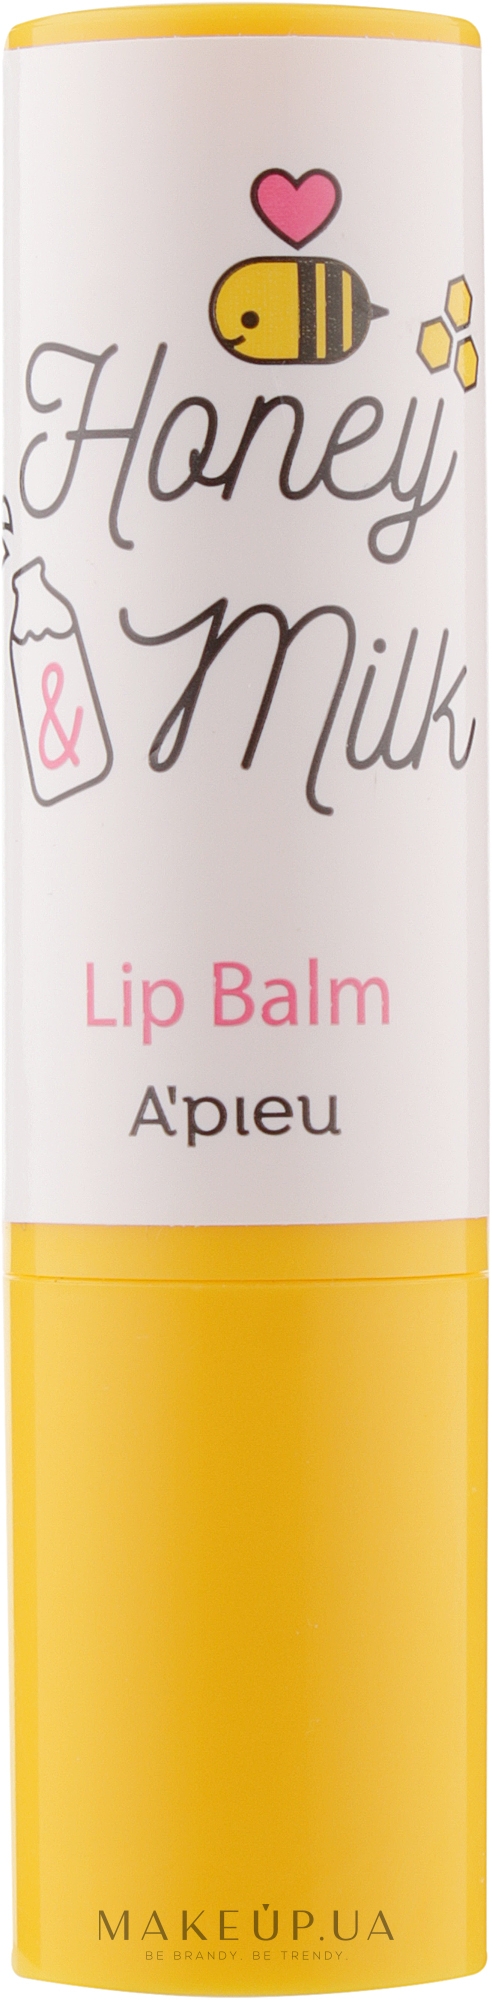 Живильний бальзам для губ - A'Pieu Honey & Milk Lip Balm — фото 3.3g